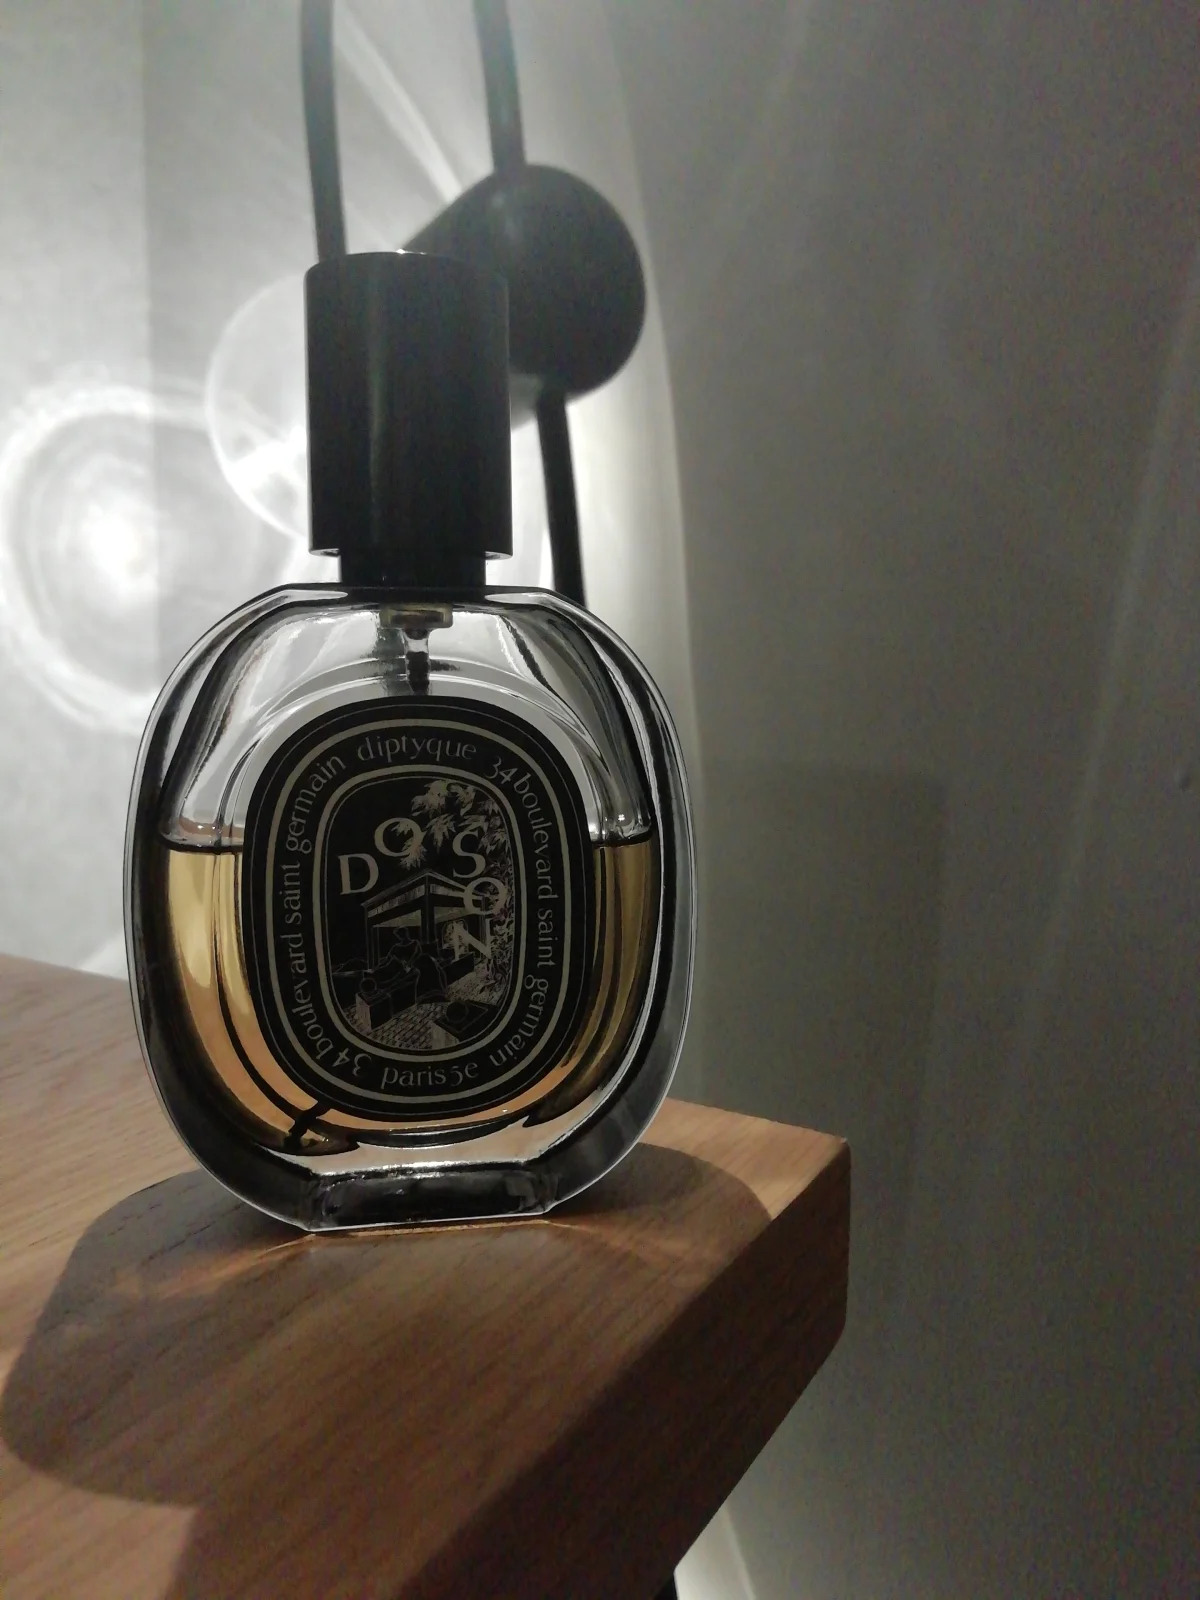 Do Son Eau de Parfum - review image